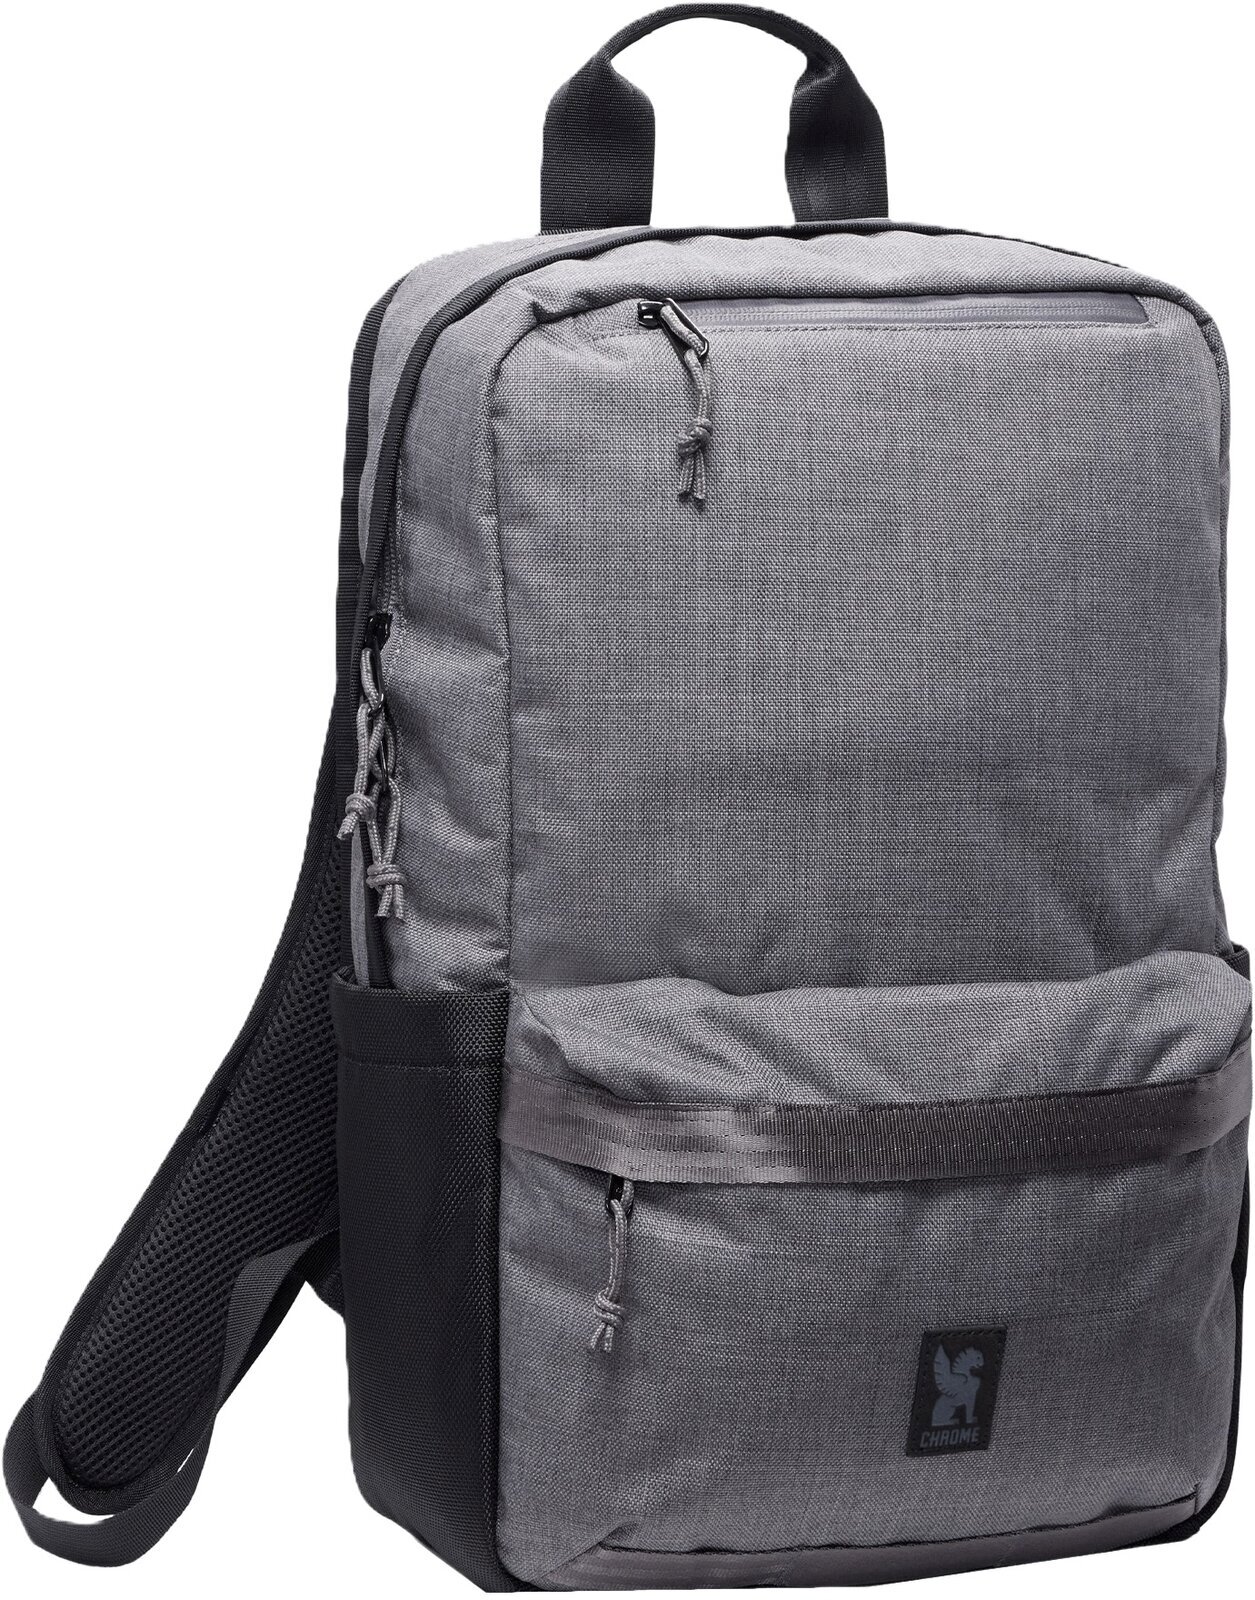 Lifestyle sac à dos / Sac Chrome Hondo Backpack Castlerock Twill 18 L Sac à dos